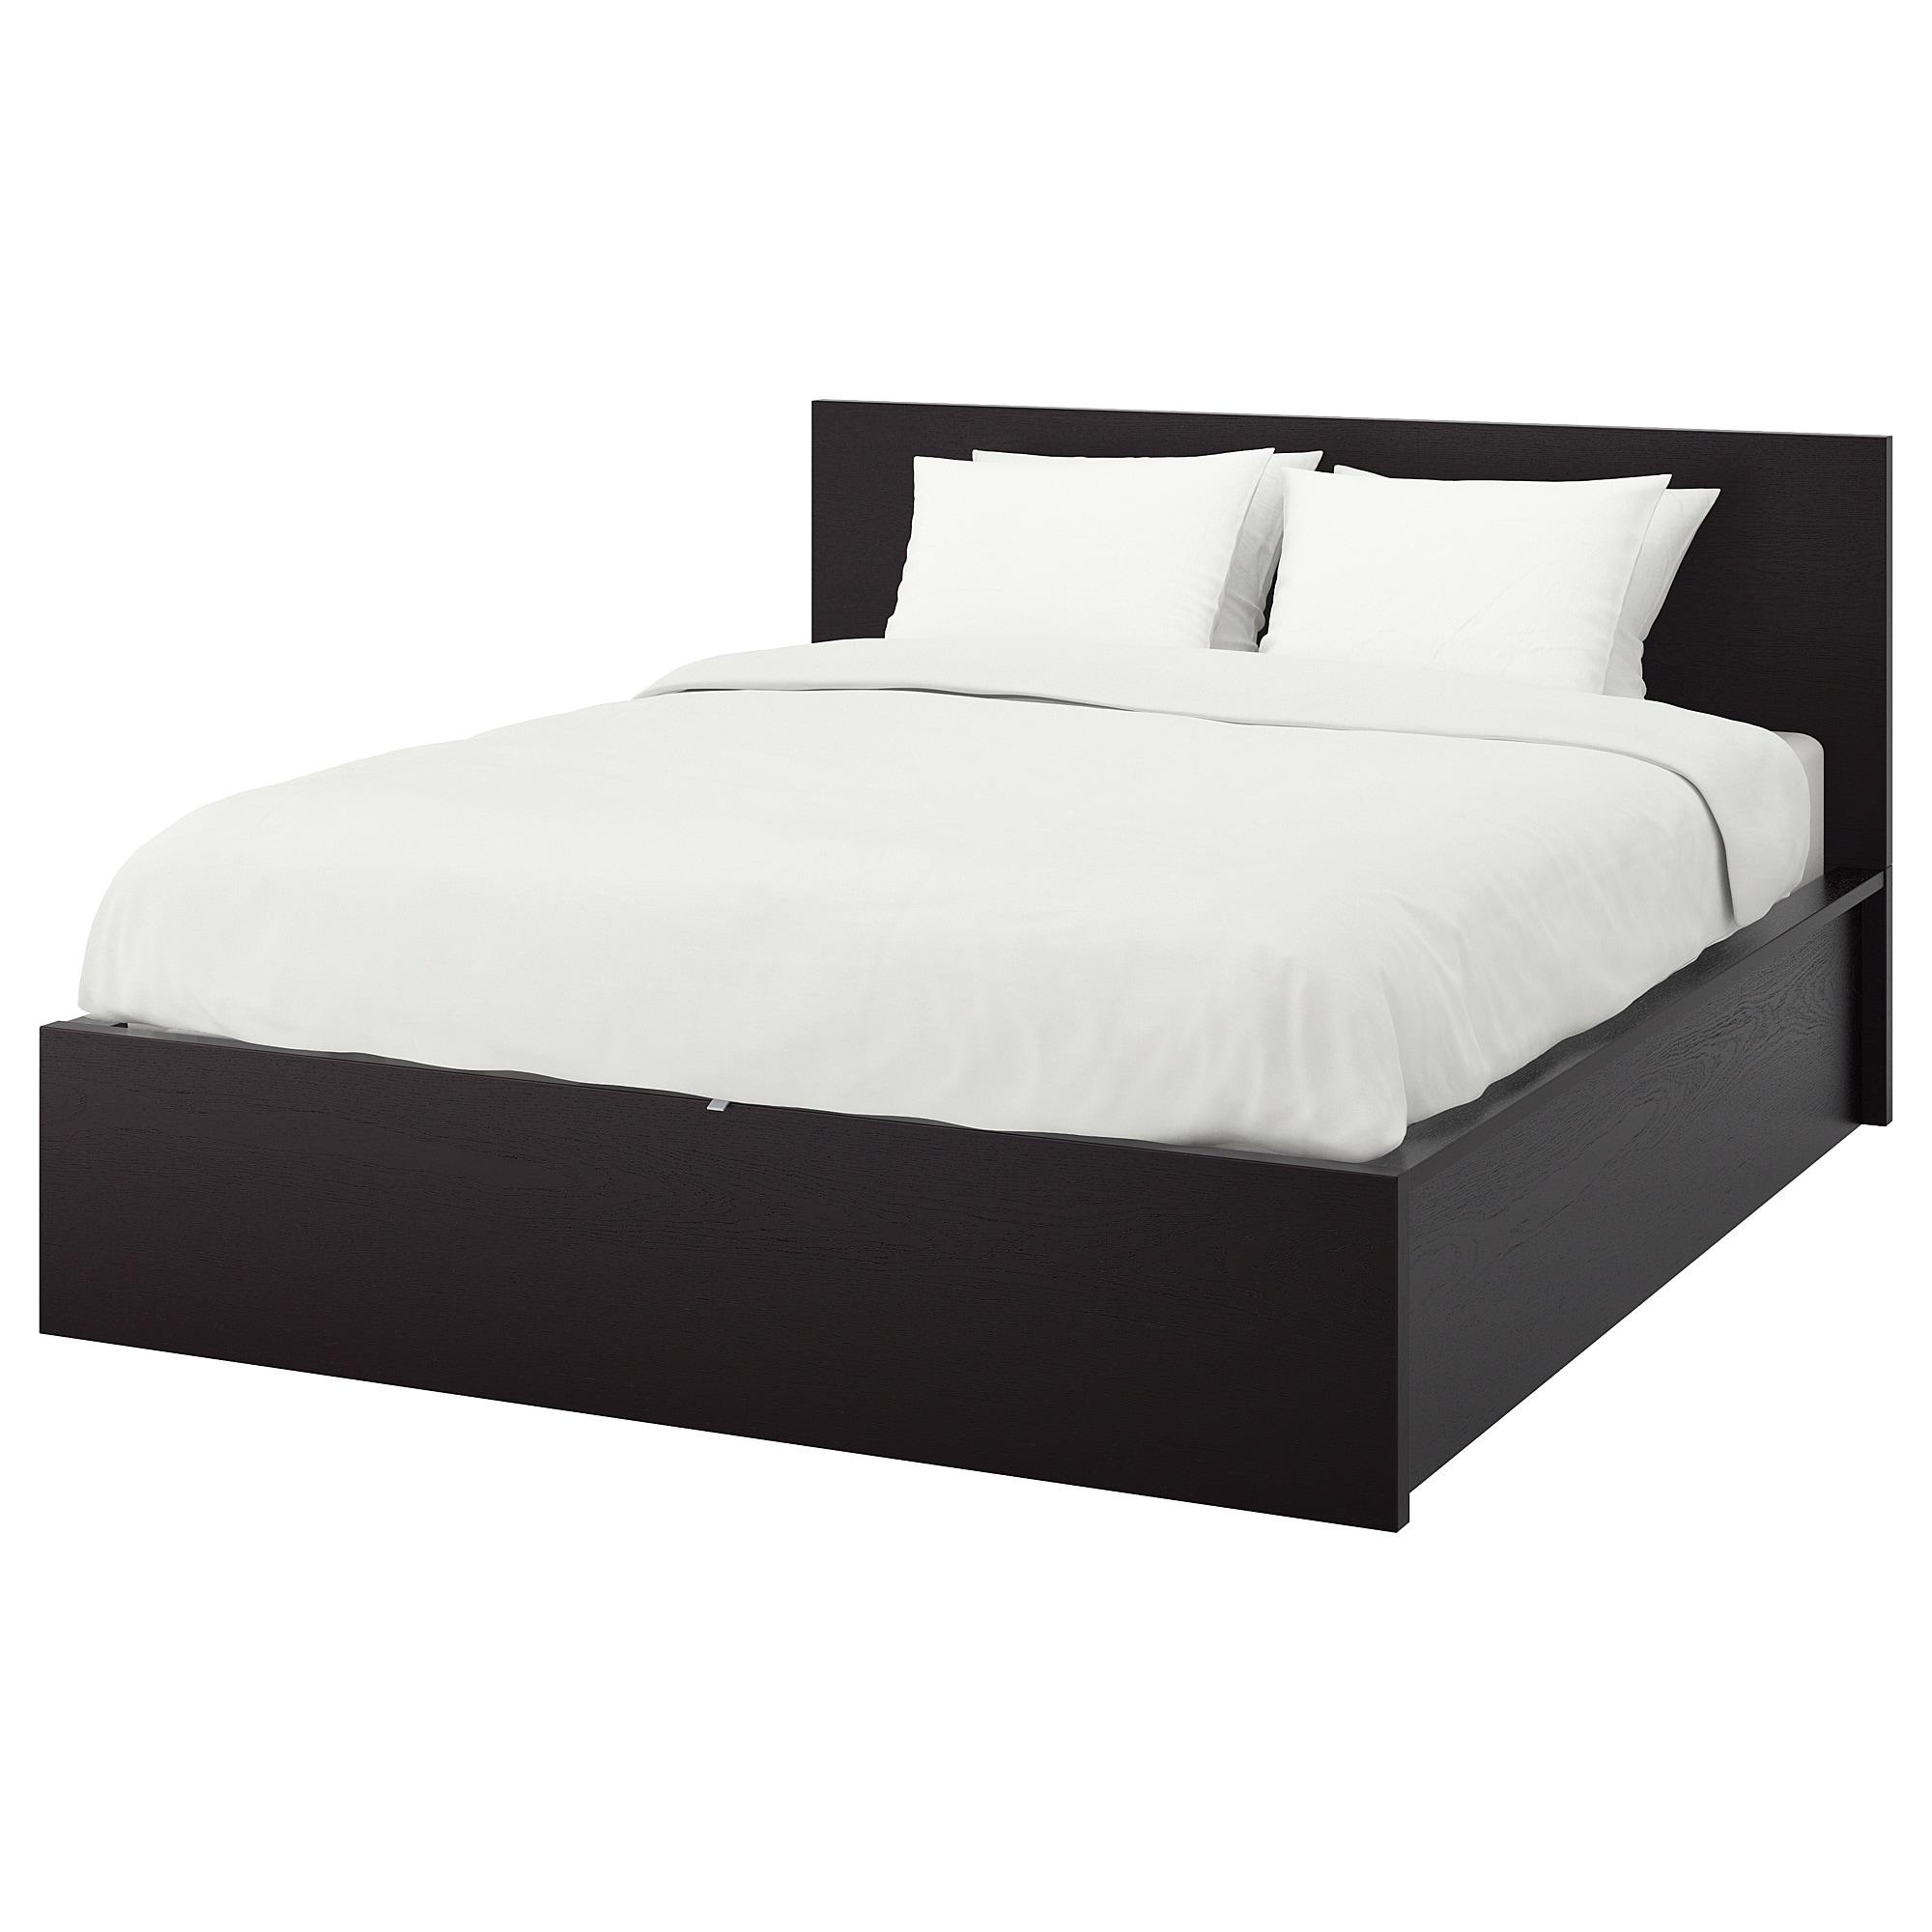 MALM Каркас ліжка з 2 ящиками для зберігання - чорно-коричневий / Lönset 140x200 см 1